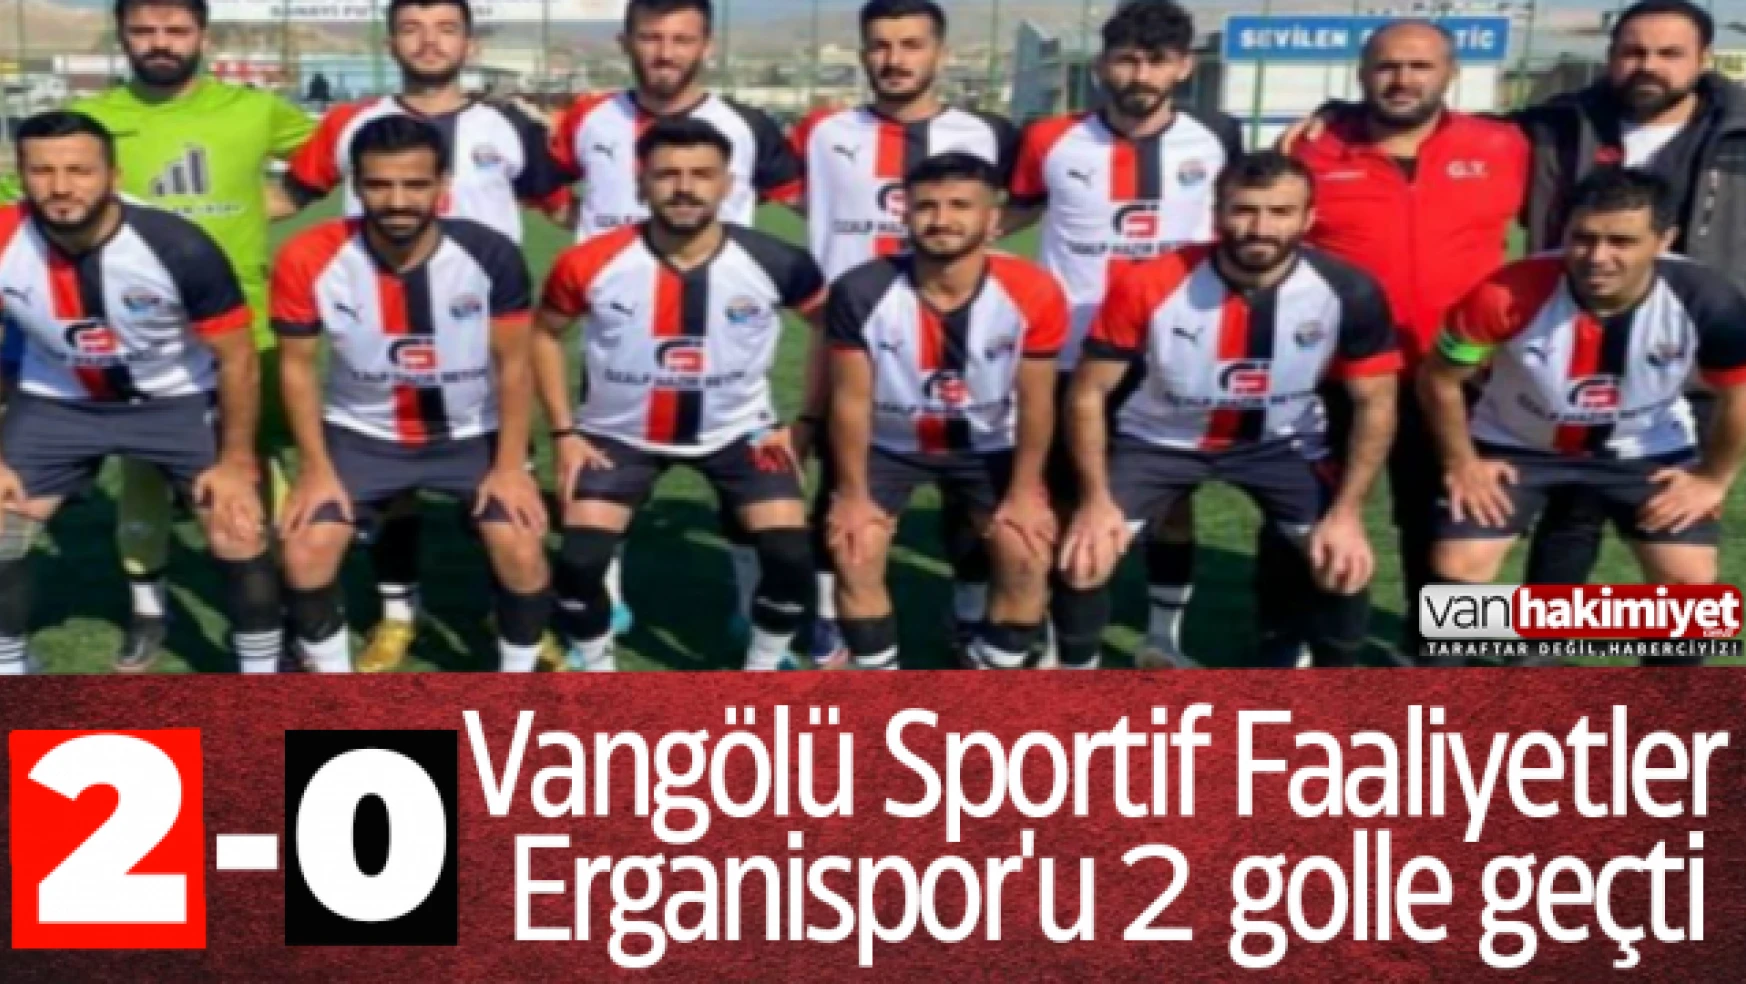 Vangölü Sportif Faaliyetler Erganispor'u 2 golle geçti